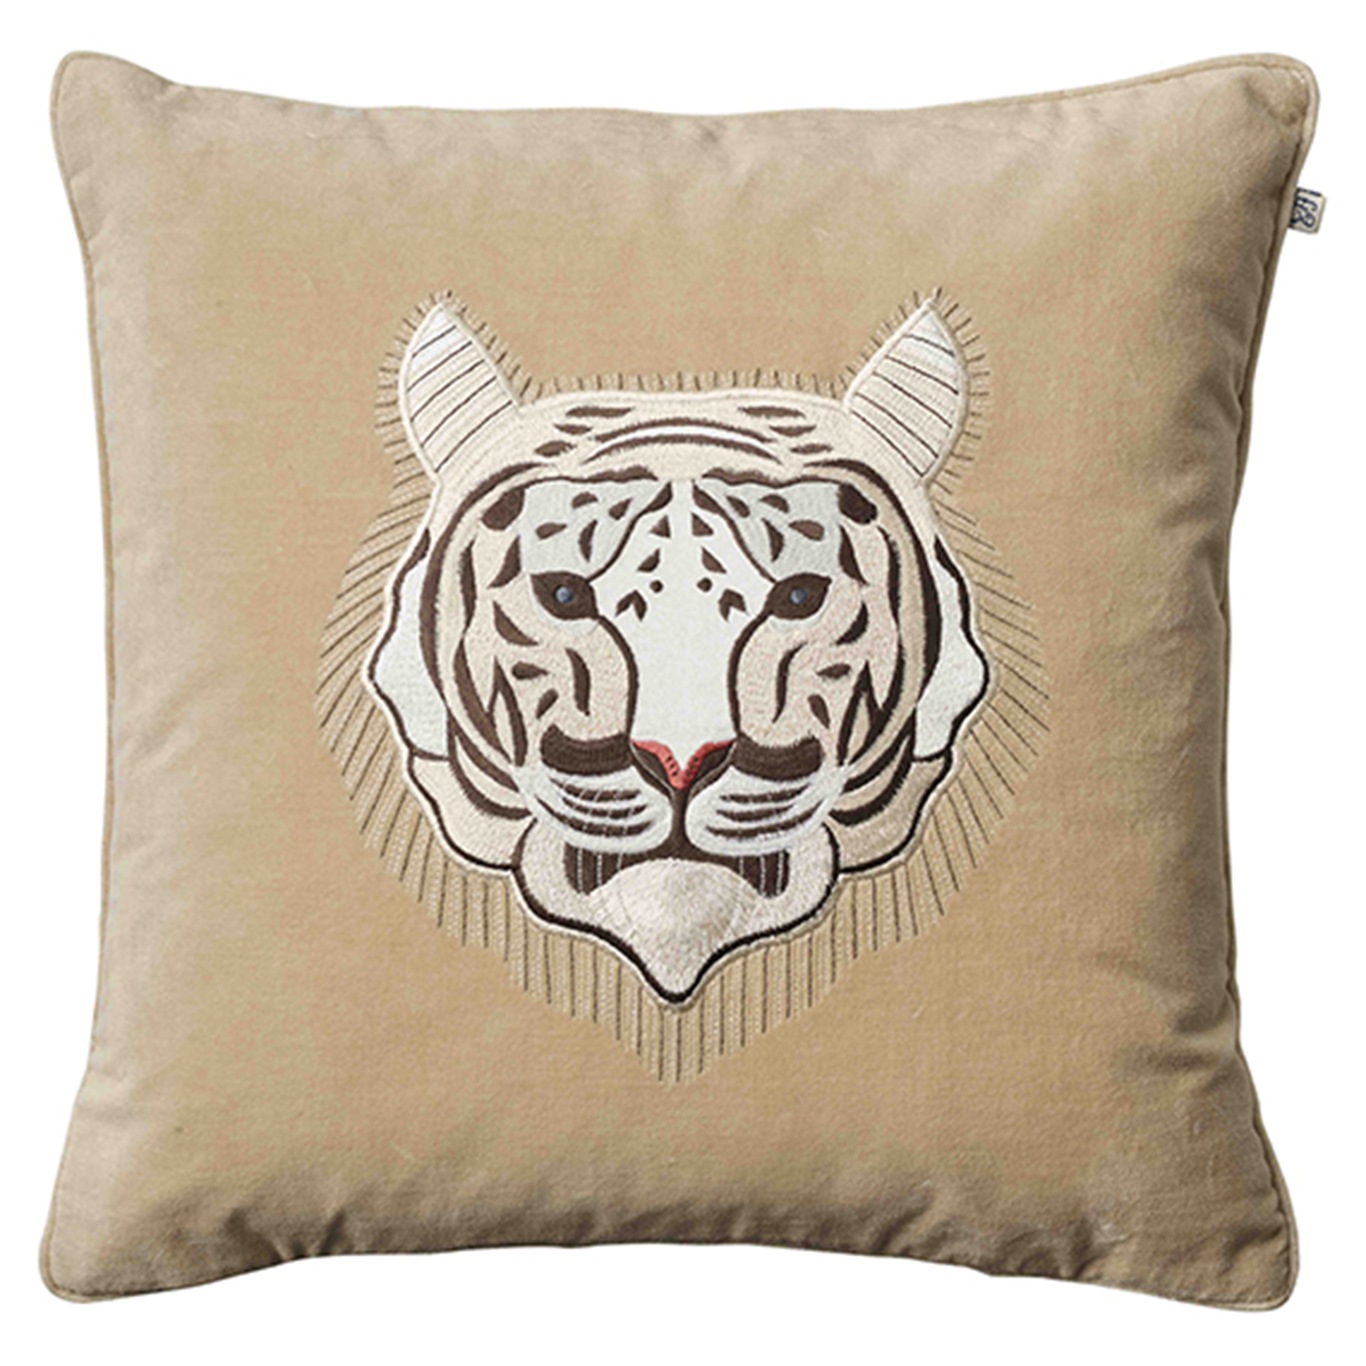 Embroidered White Tiger Kuddfodral 50x50 cm, Beige